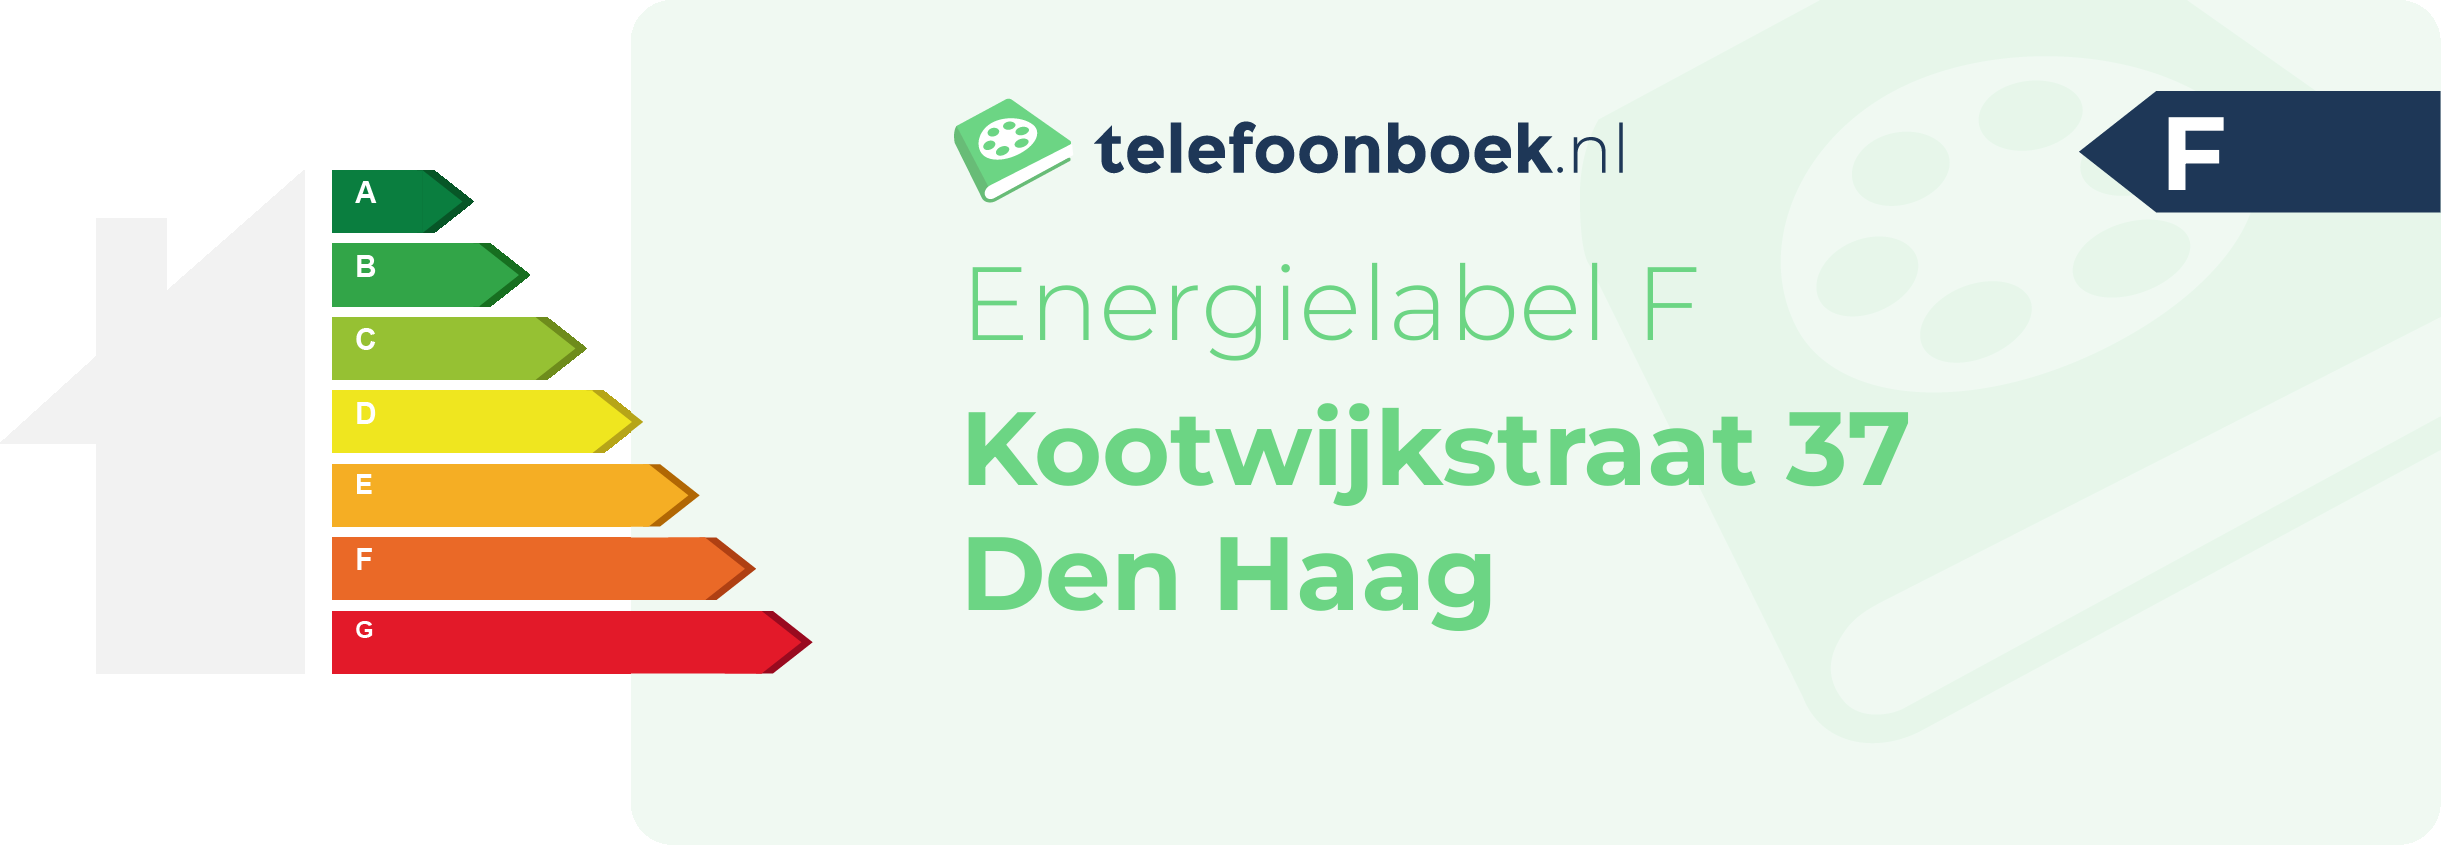 Energielabel Kootwijkstraat 37 Den Haag